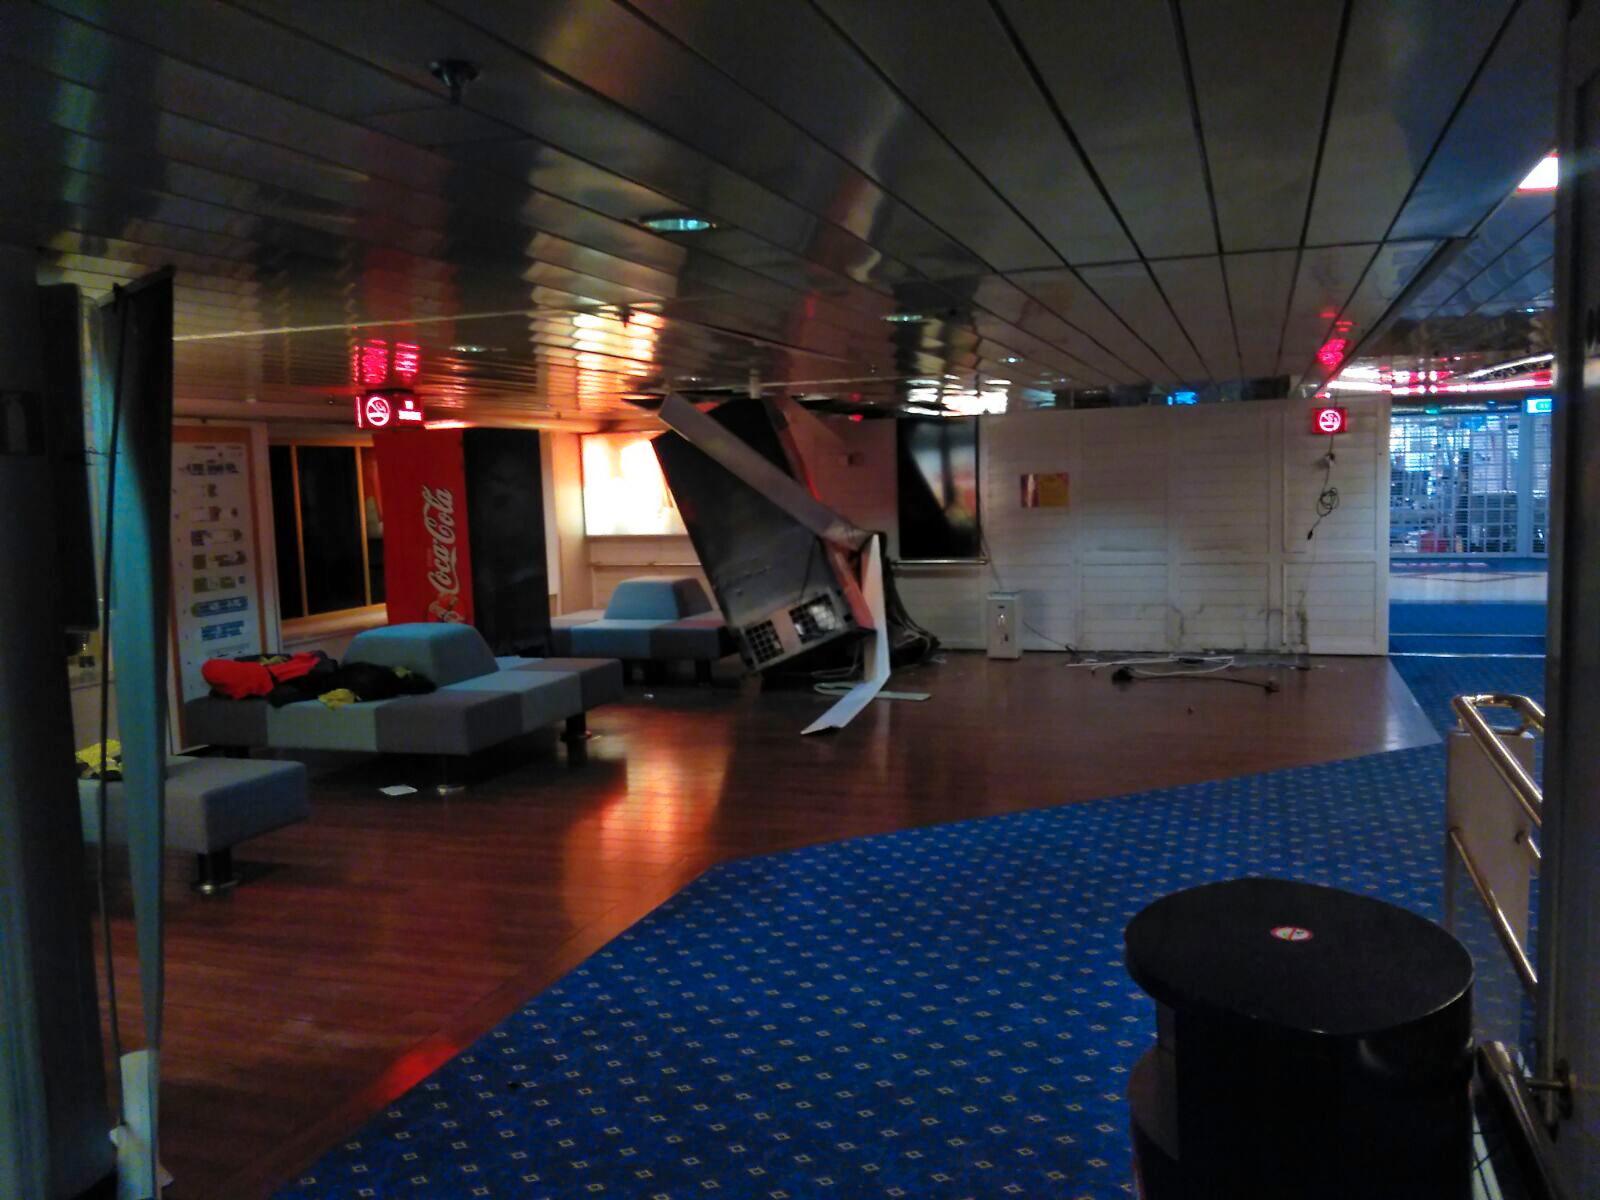 En av radarantennerna på Tallinks passagerarfartyg Romantika skadades i den hårda vinden. Antennen flög iväg och orsakade skador på ett fönster som leder till den så kallade Tangobaren.